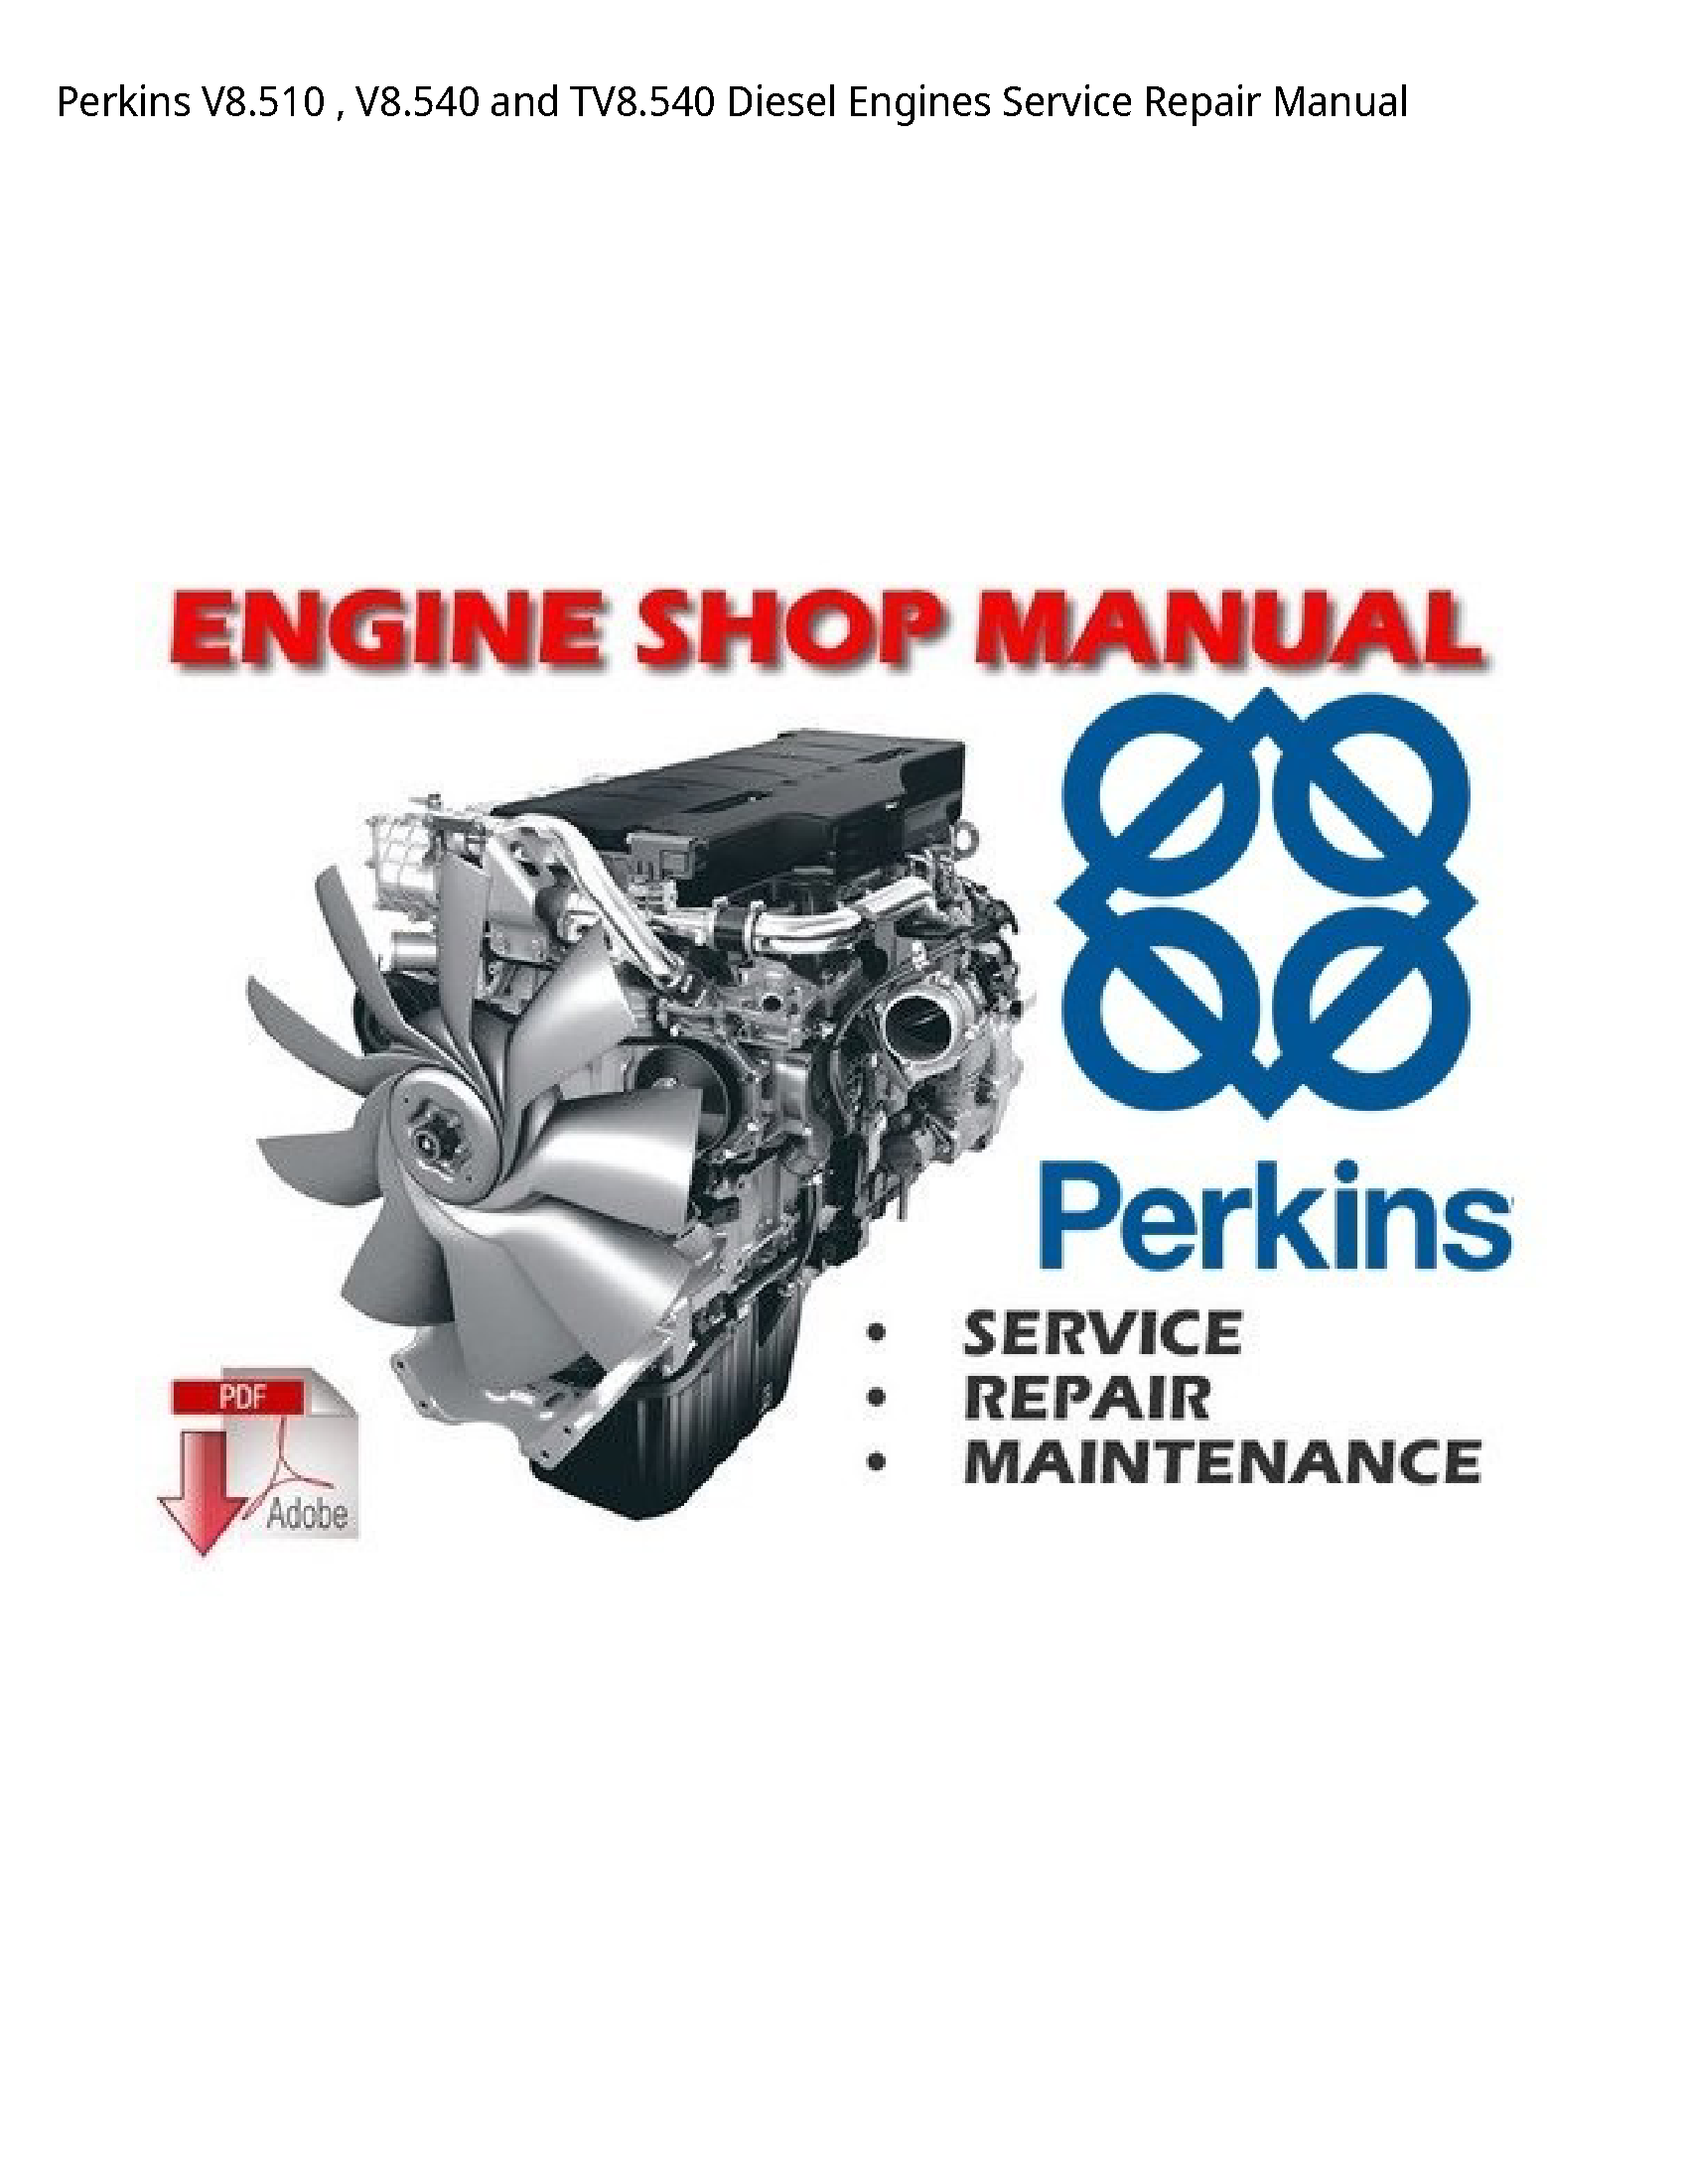 Perkins V8.510  Diesel Engines manual